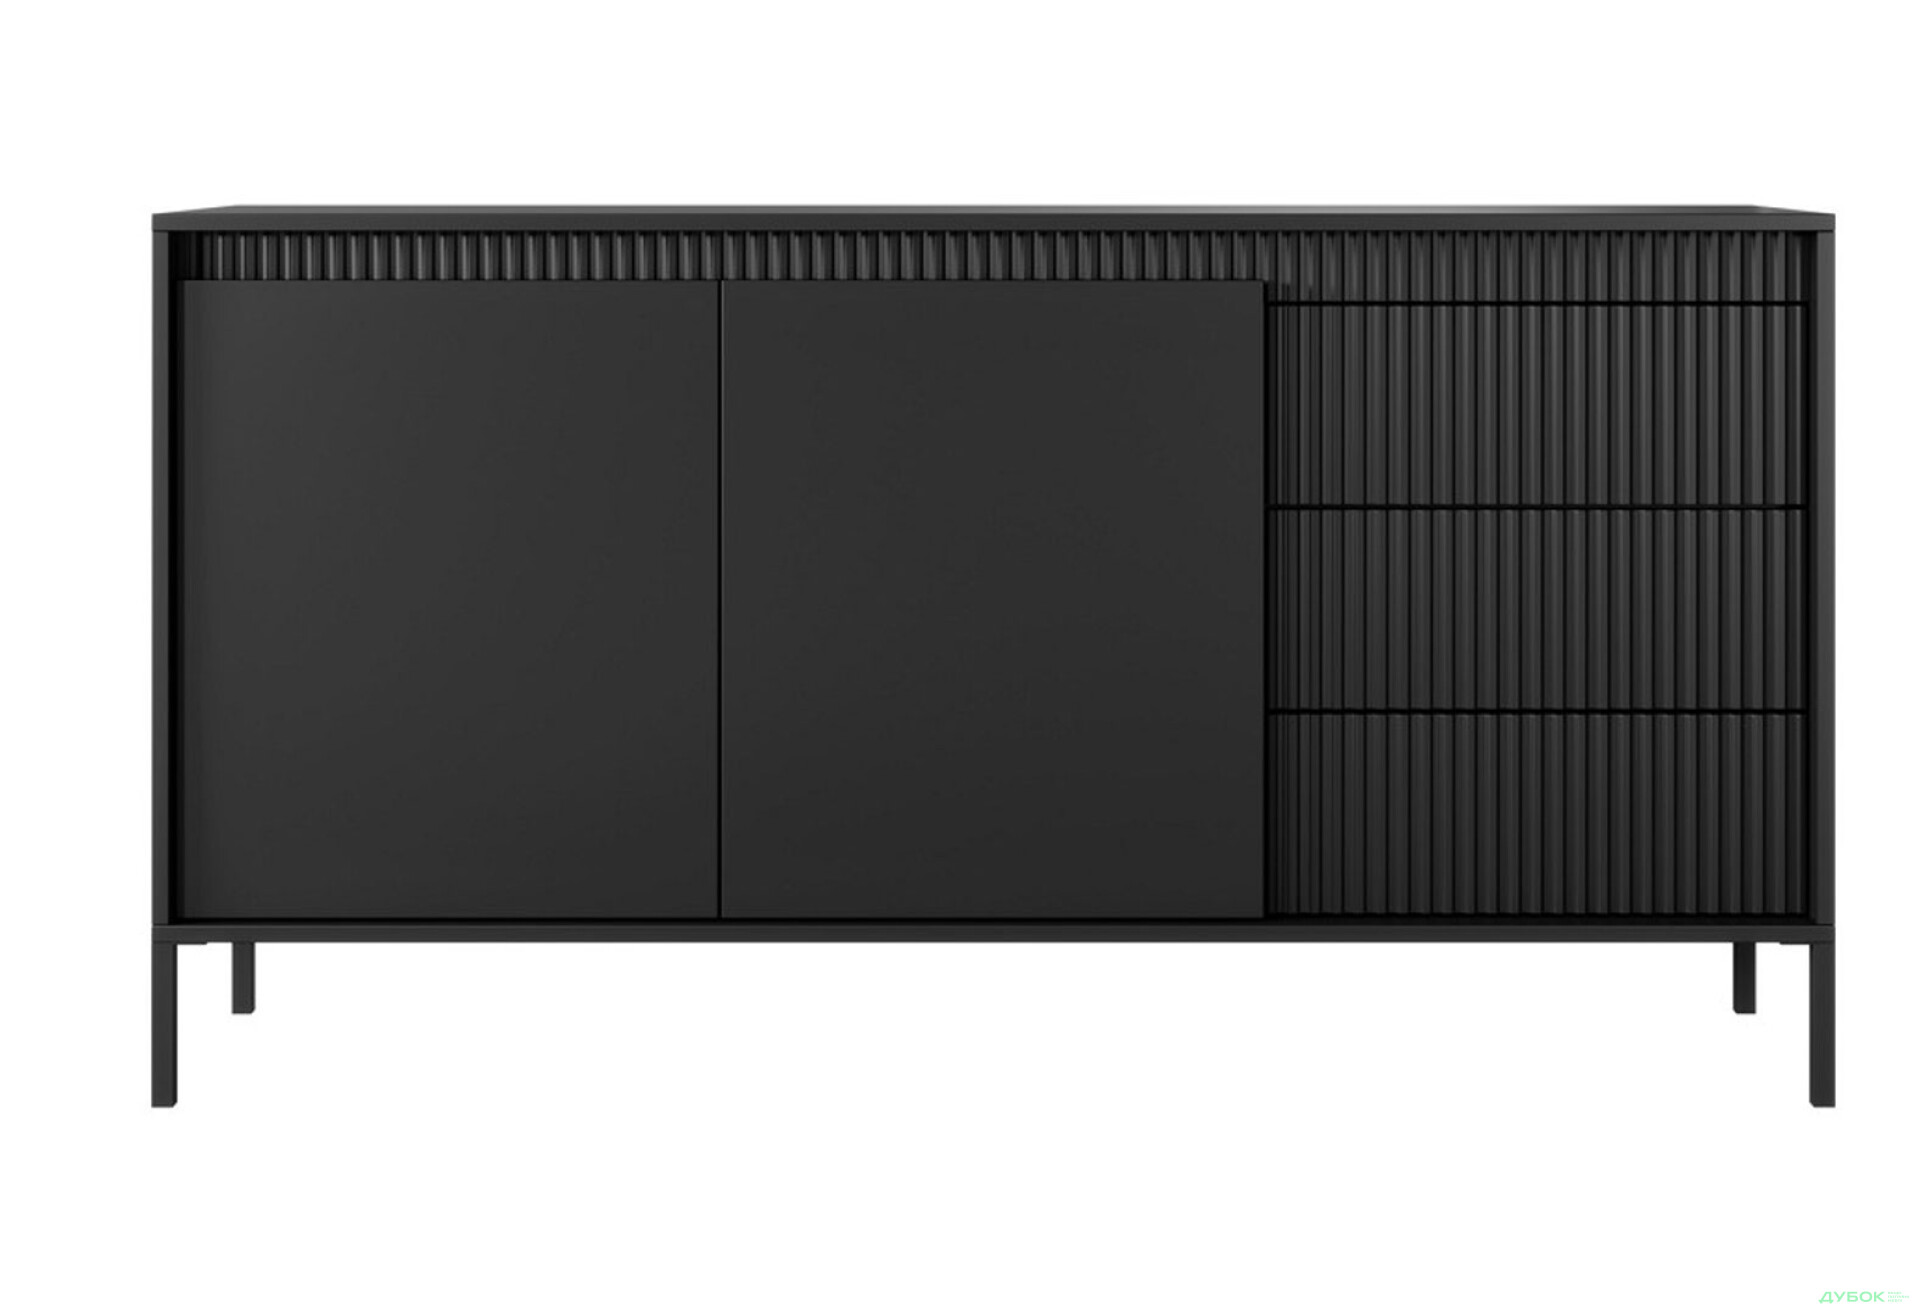 Фото 2 - Комод Perfect Home Сенсо / Senso 2-дверный с 3 ящиками 153 см, черный